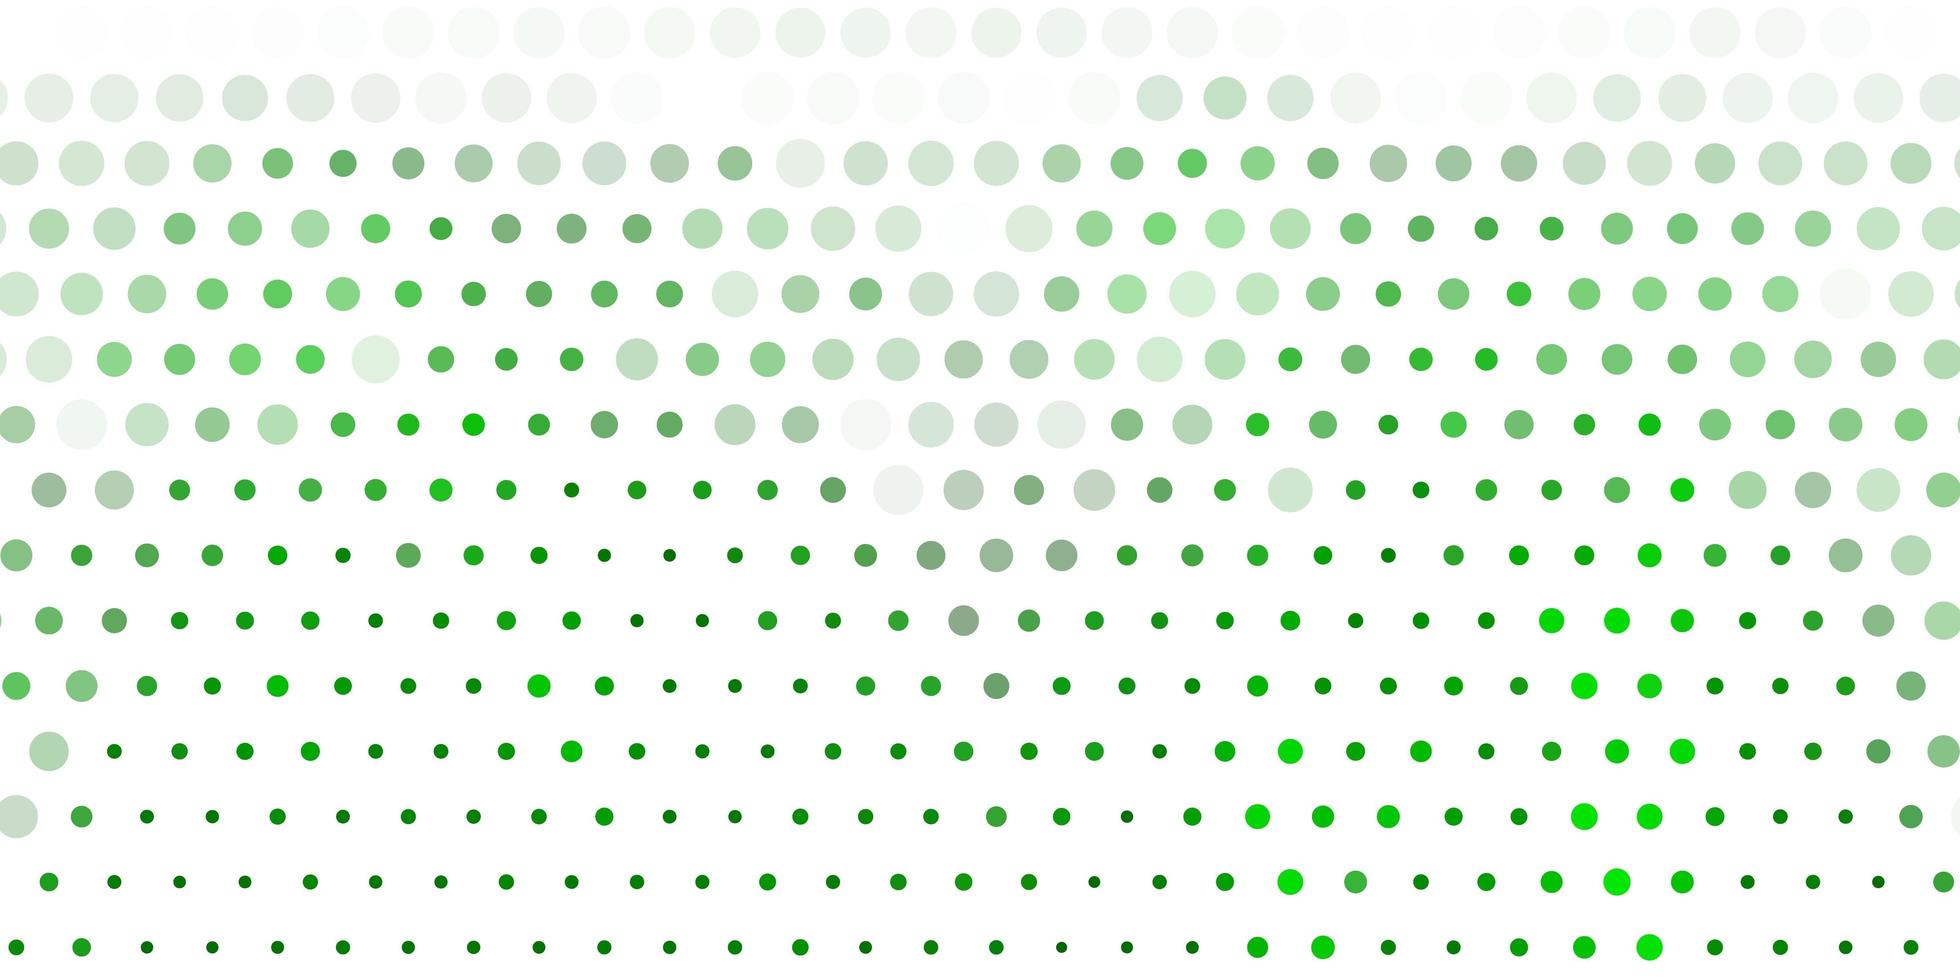 sfondo vettoriale verde chiaro con bolle.